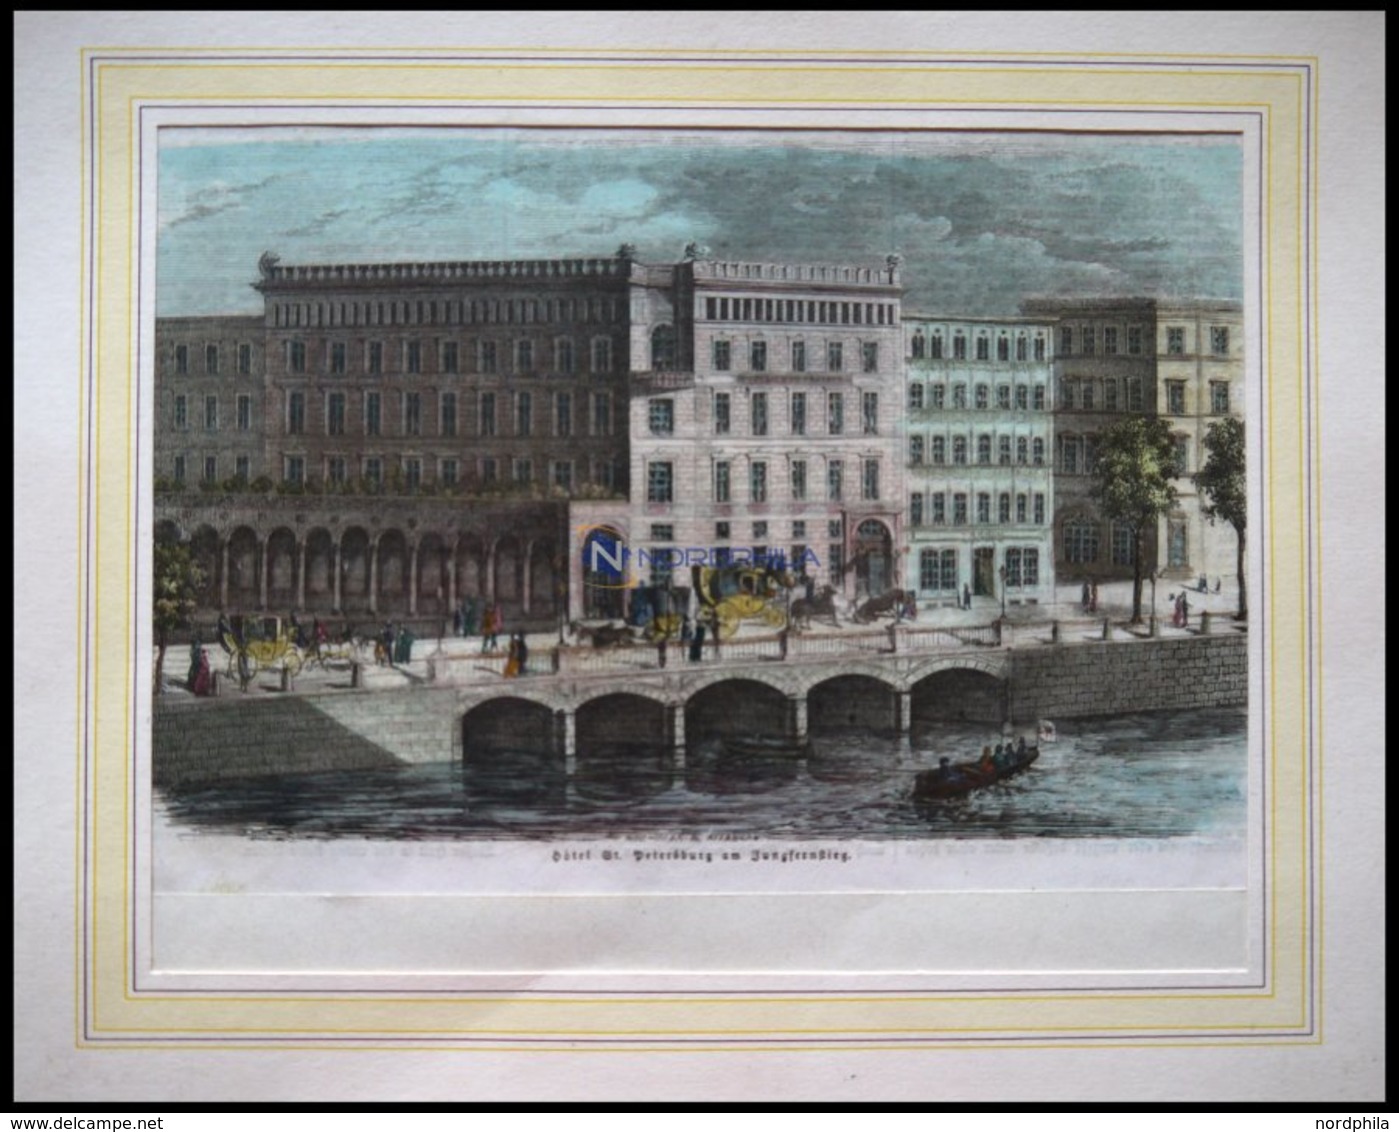 HAMBURG: Hotel St. Petersburg A, Jungfernstieg, Kolorierter Holzstich Um 1880 - Lithographien